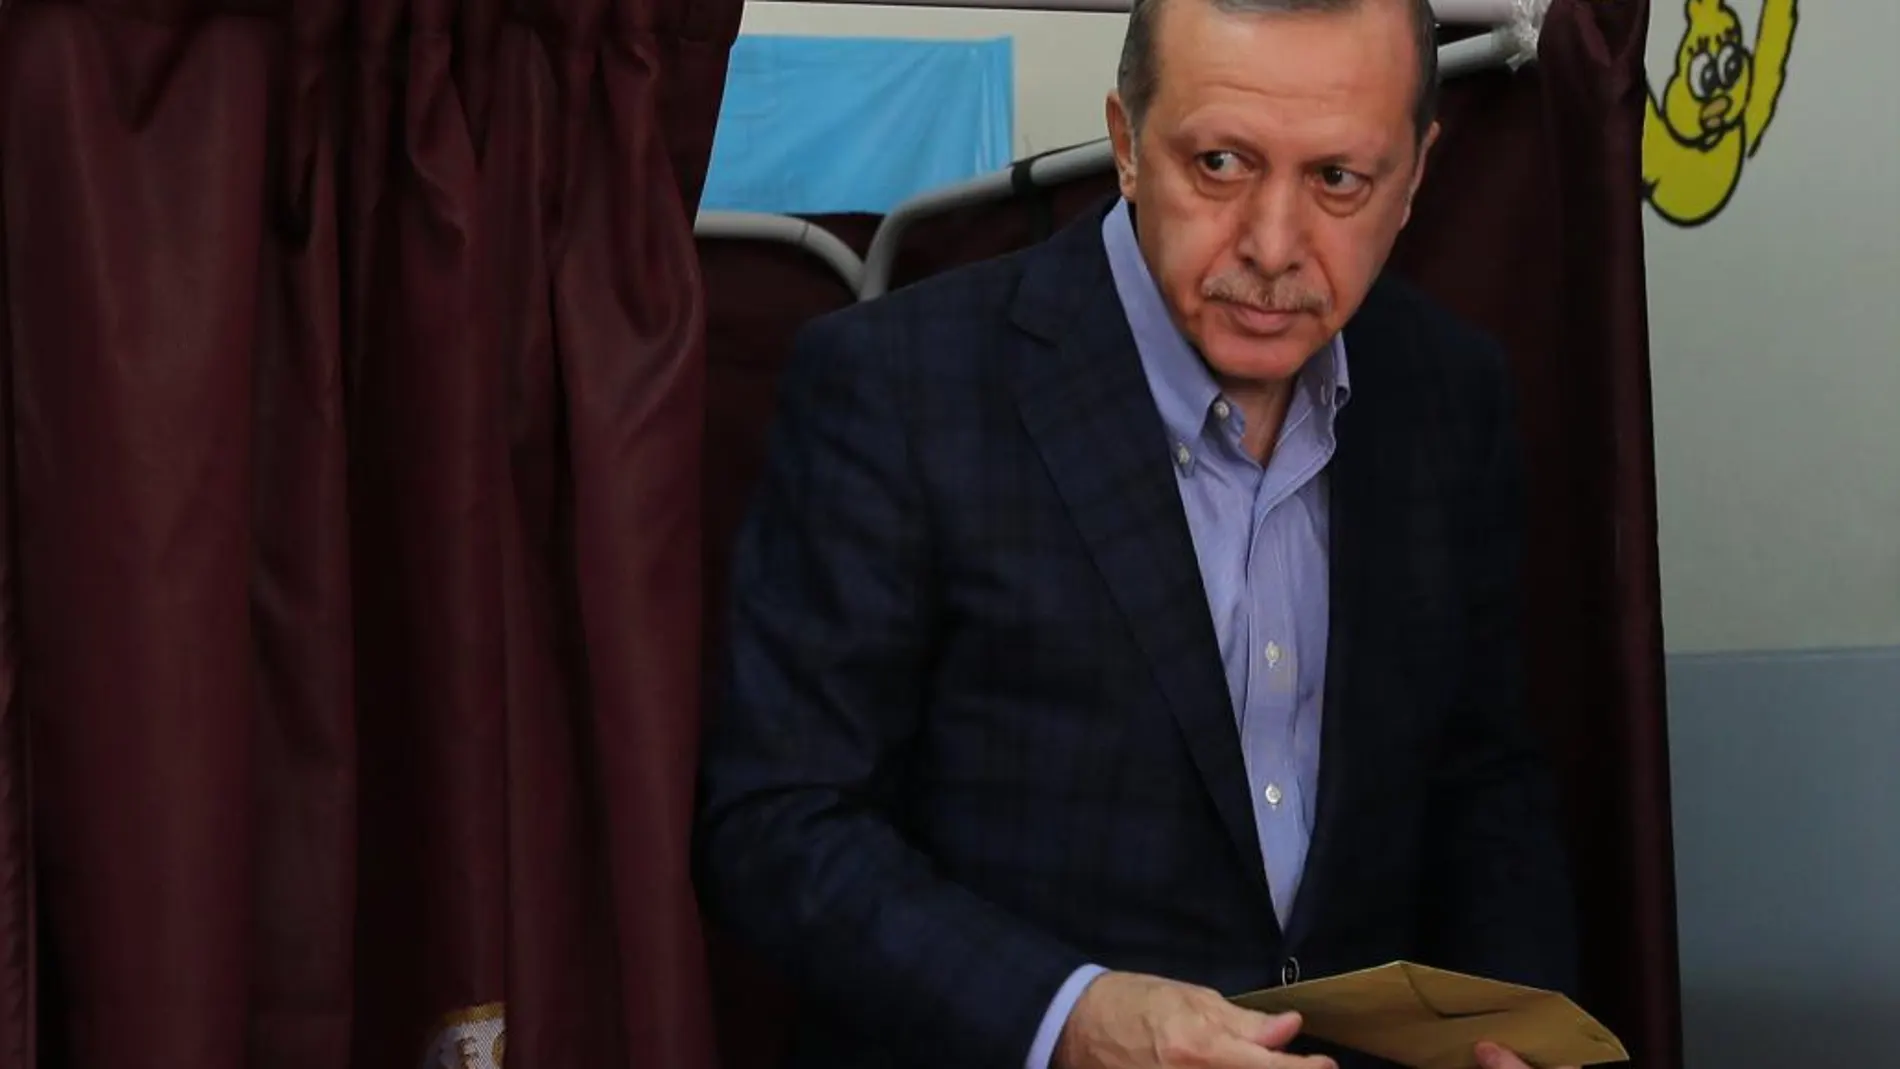 Recep Tayyip Erdogan antes de depositar su voto en el colegio electoral, en Estambul, el pasado 1 de noviembre